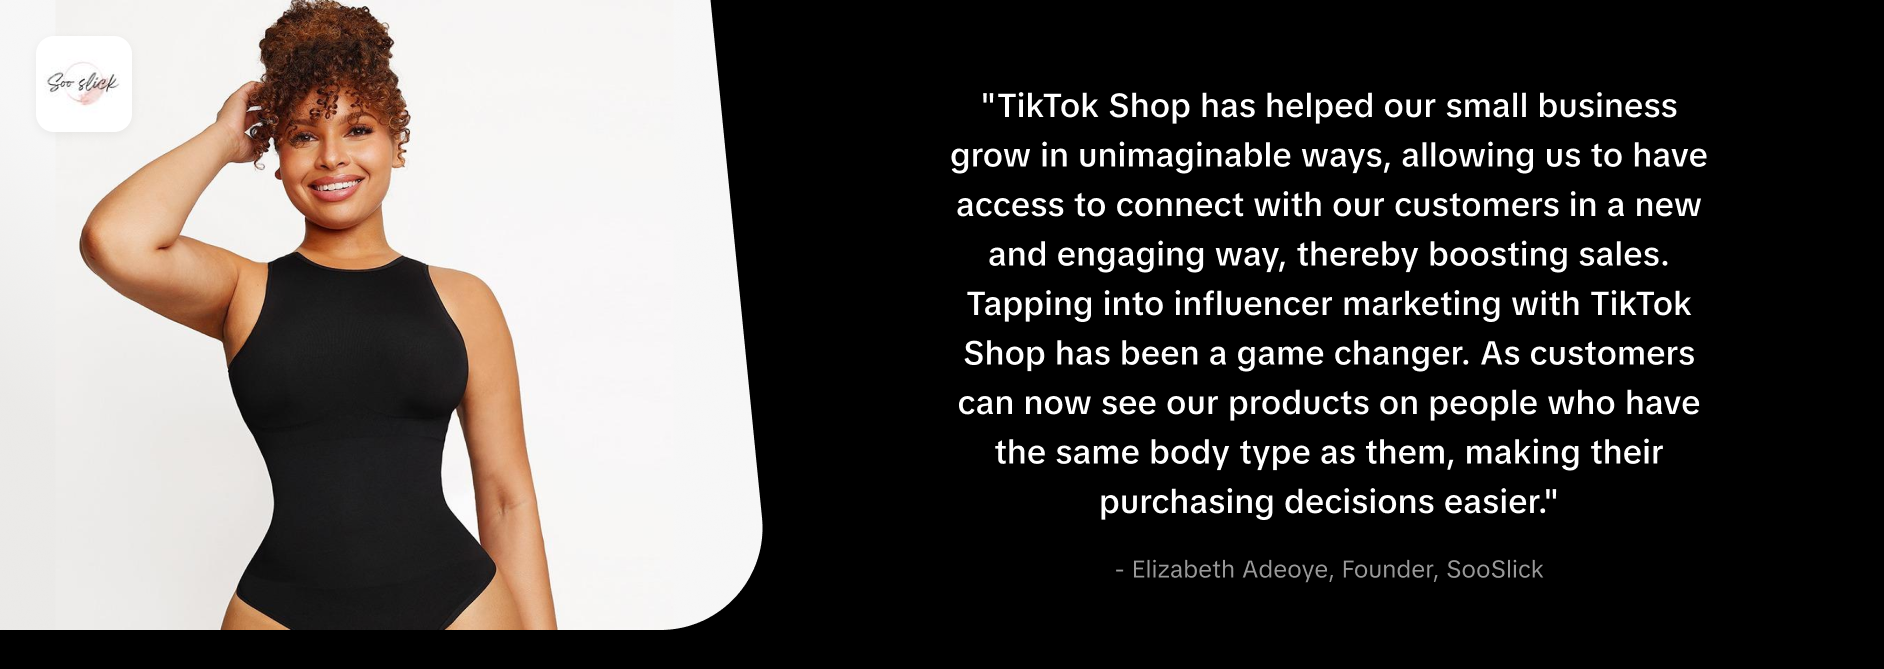 TikTok Shopping, ¿qué es y cómo funciona?